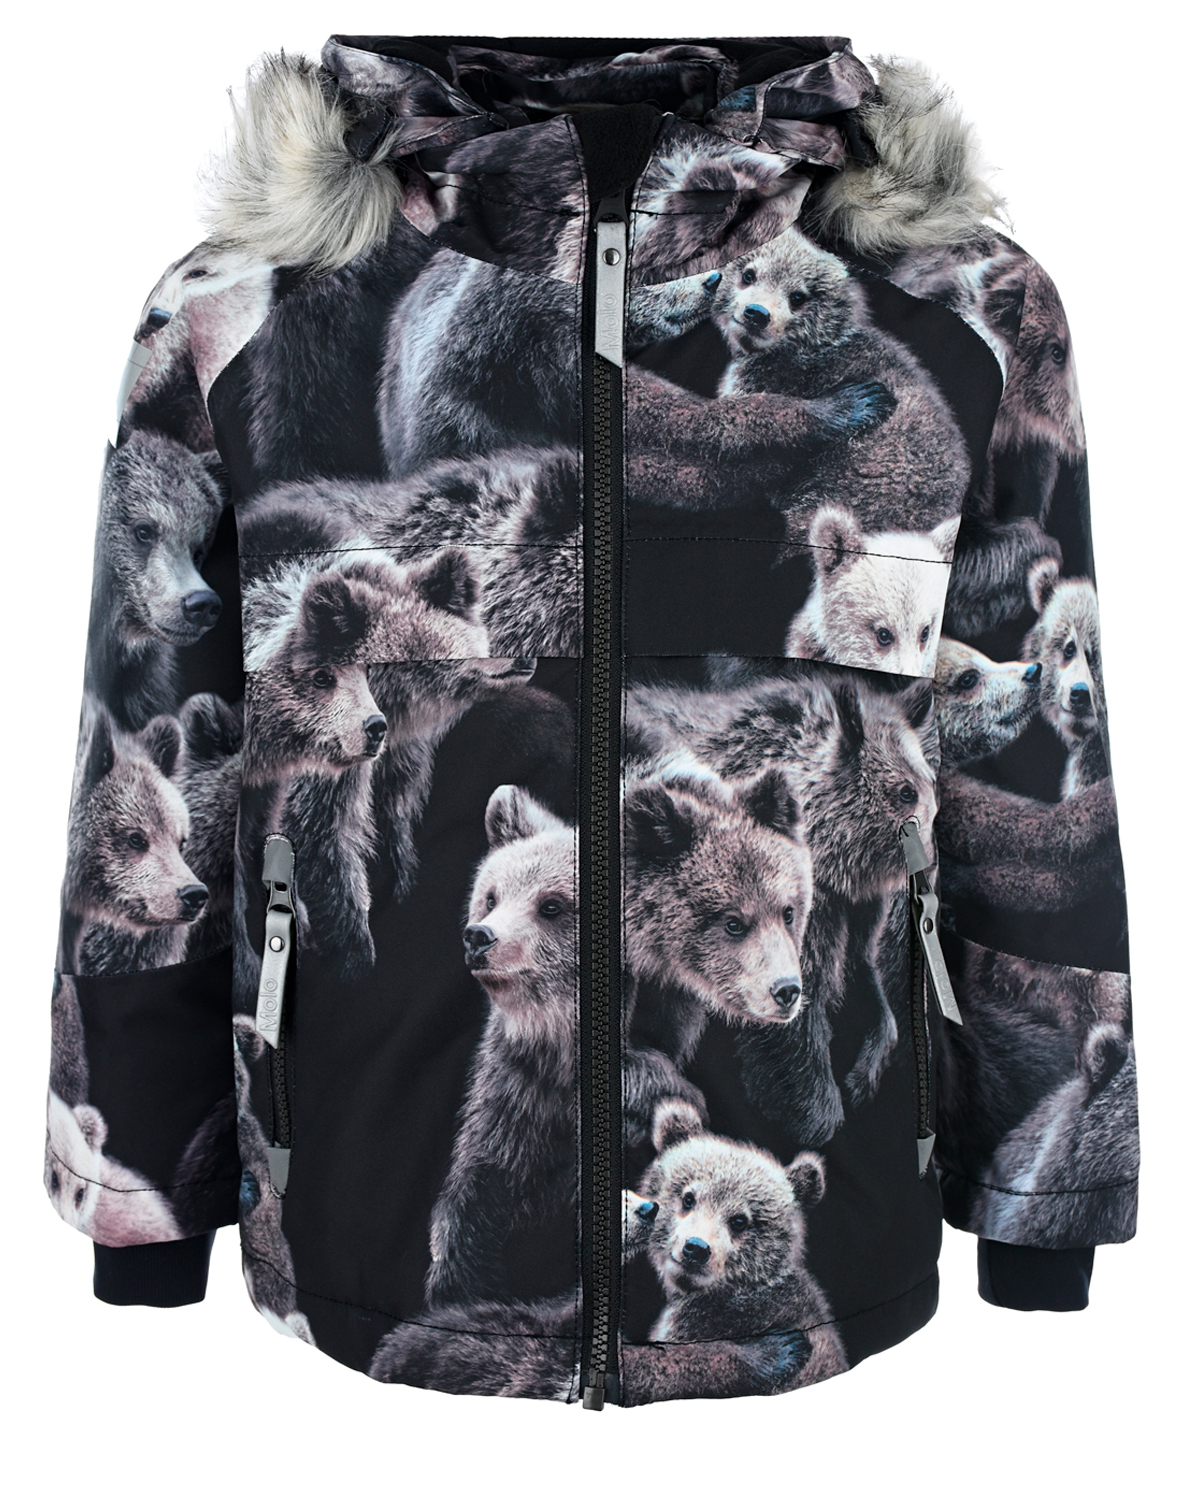 Куртка с принтом "медведи" Molo детская, размер 104, цвет нет цвета - фото 1